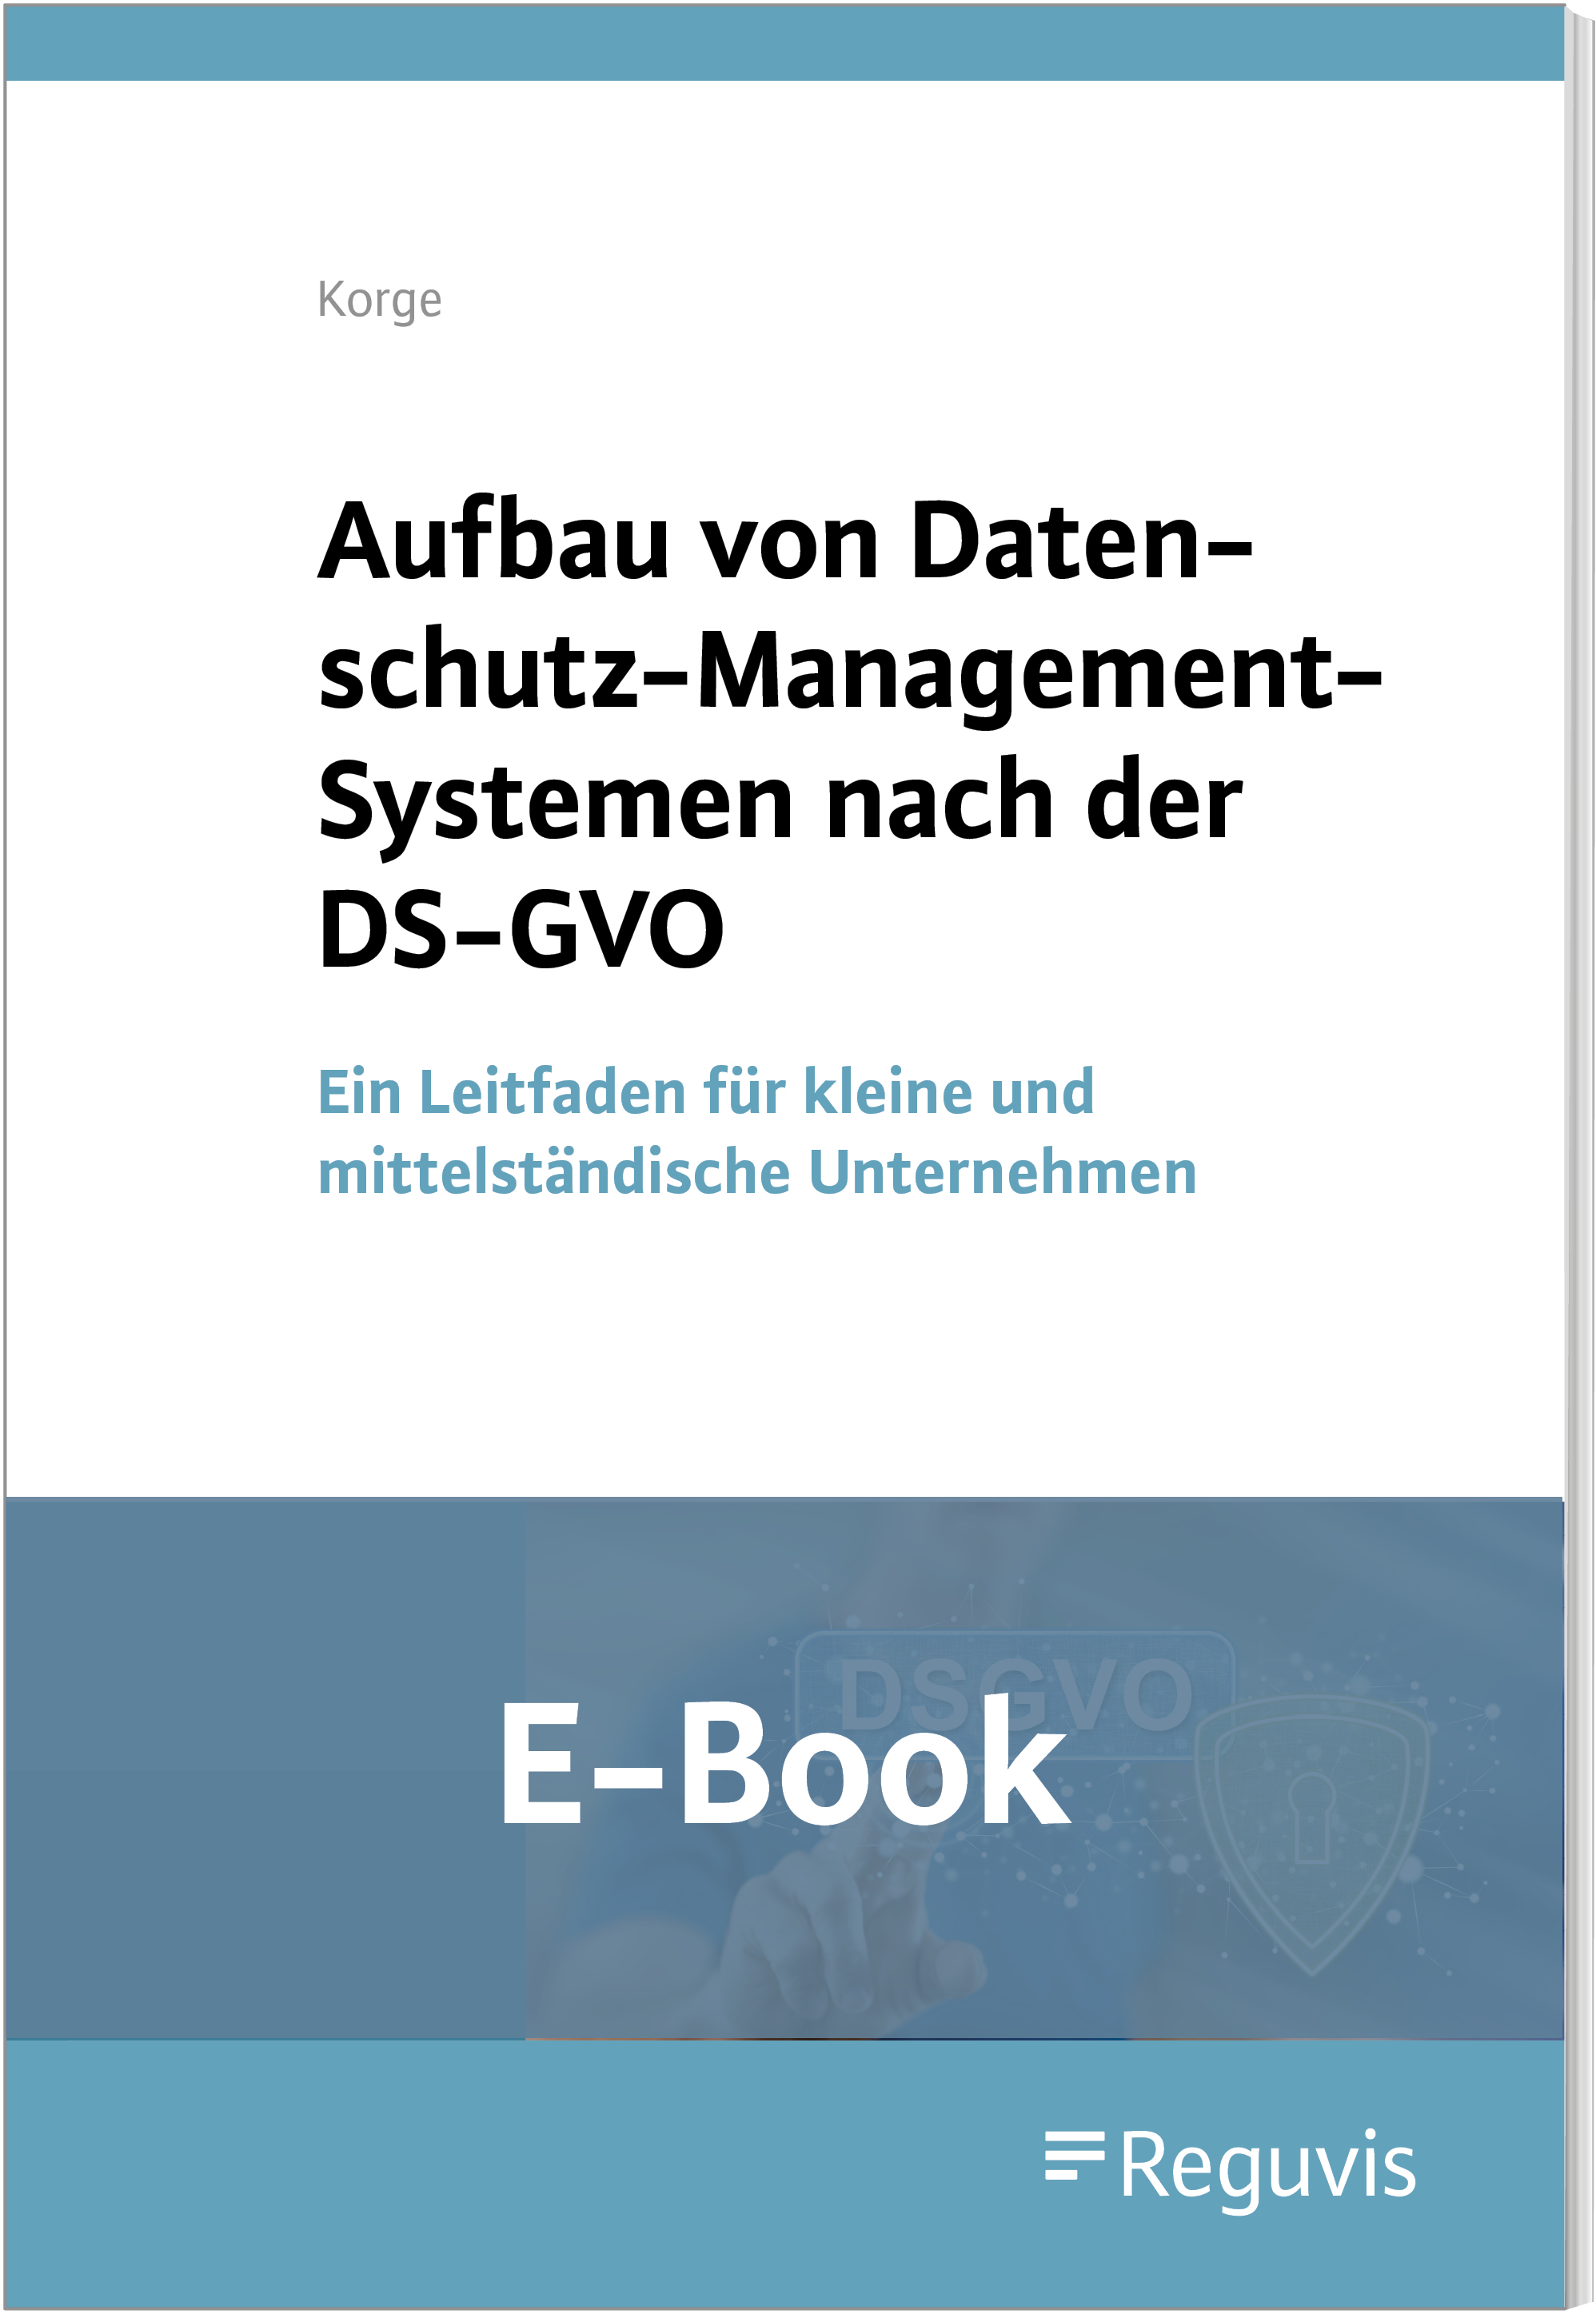 Aufbau von Datenschutz-Management-Systemen nach der DS-GVO (E-Book)